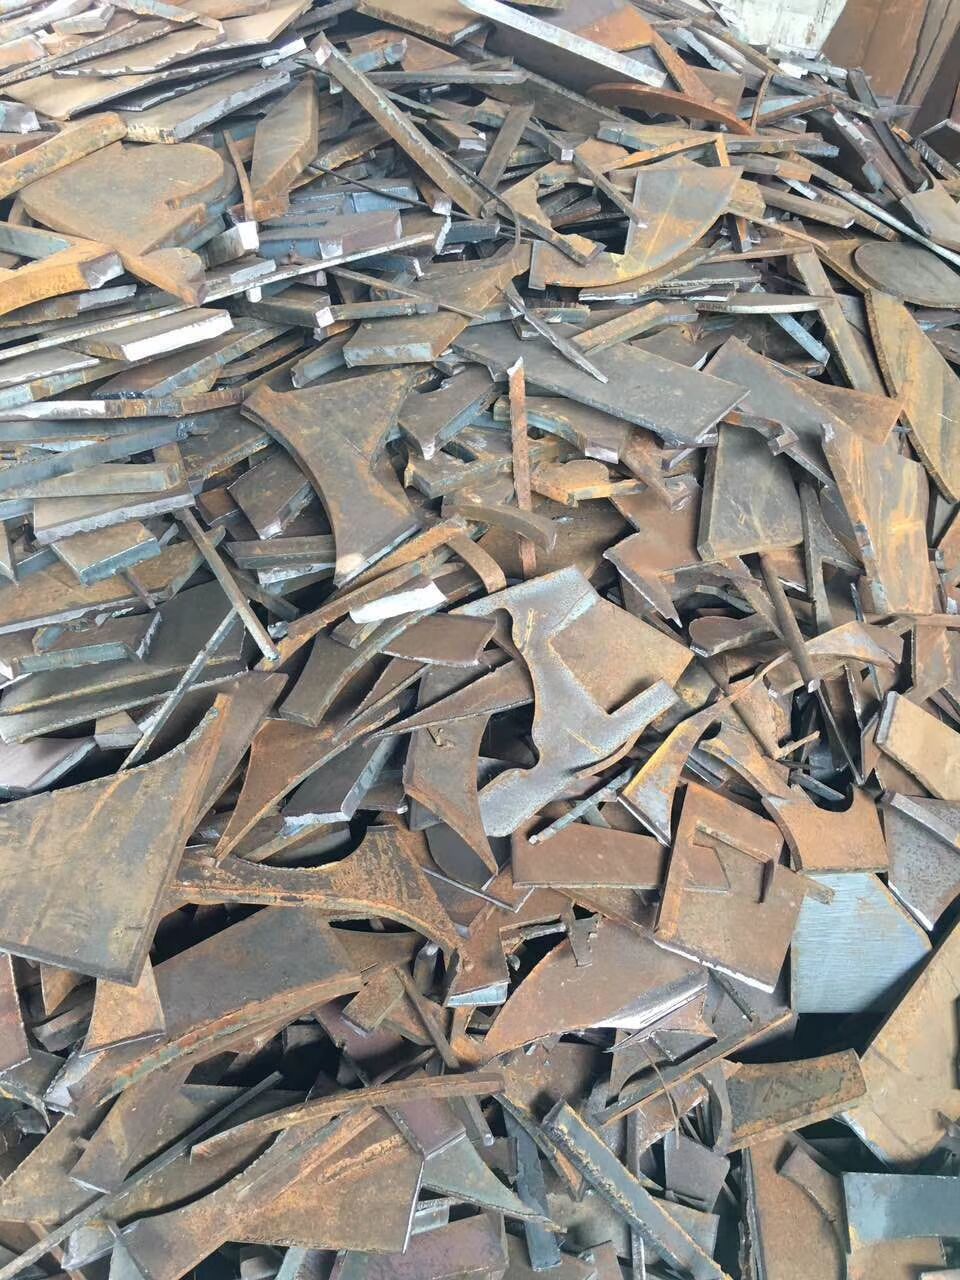 广州市旧模具回收、收购旧模具公司回收多少钱